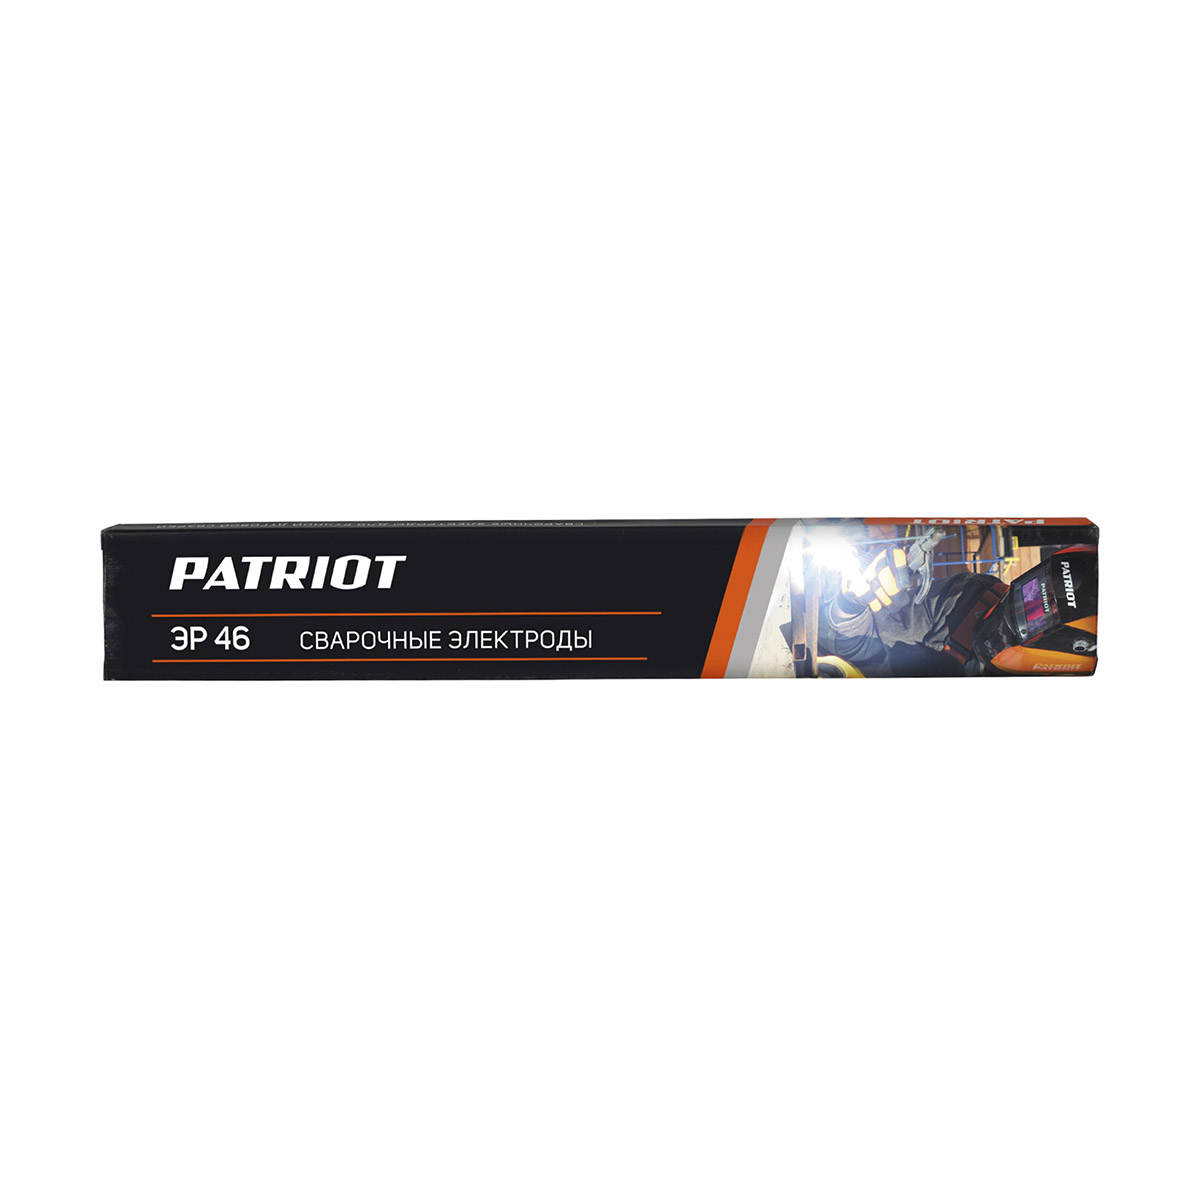 Электроды сварочные Patriot ЭР 46, 3 мм, 5 кг электроды patriot мр 3с 4 0mm 1kg 605012010